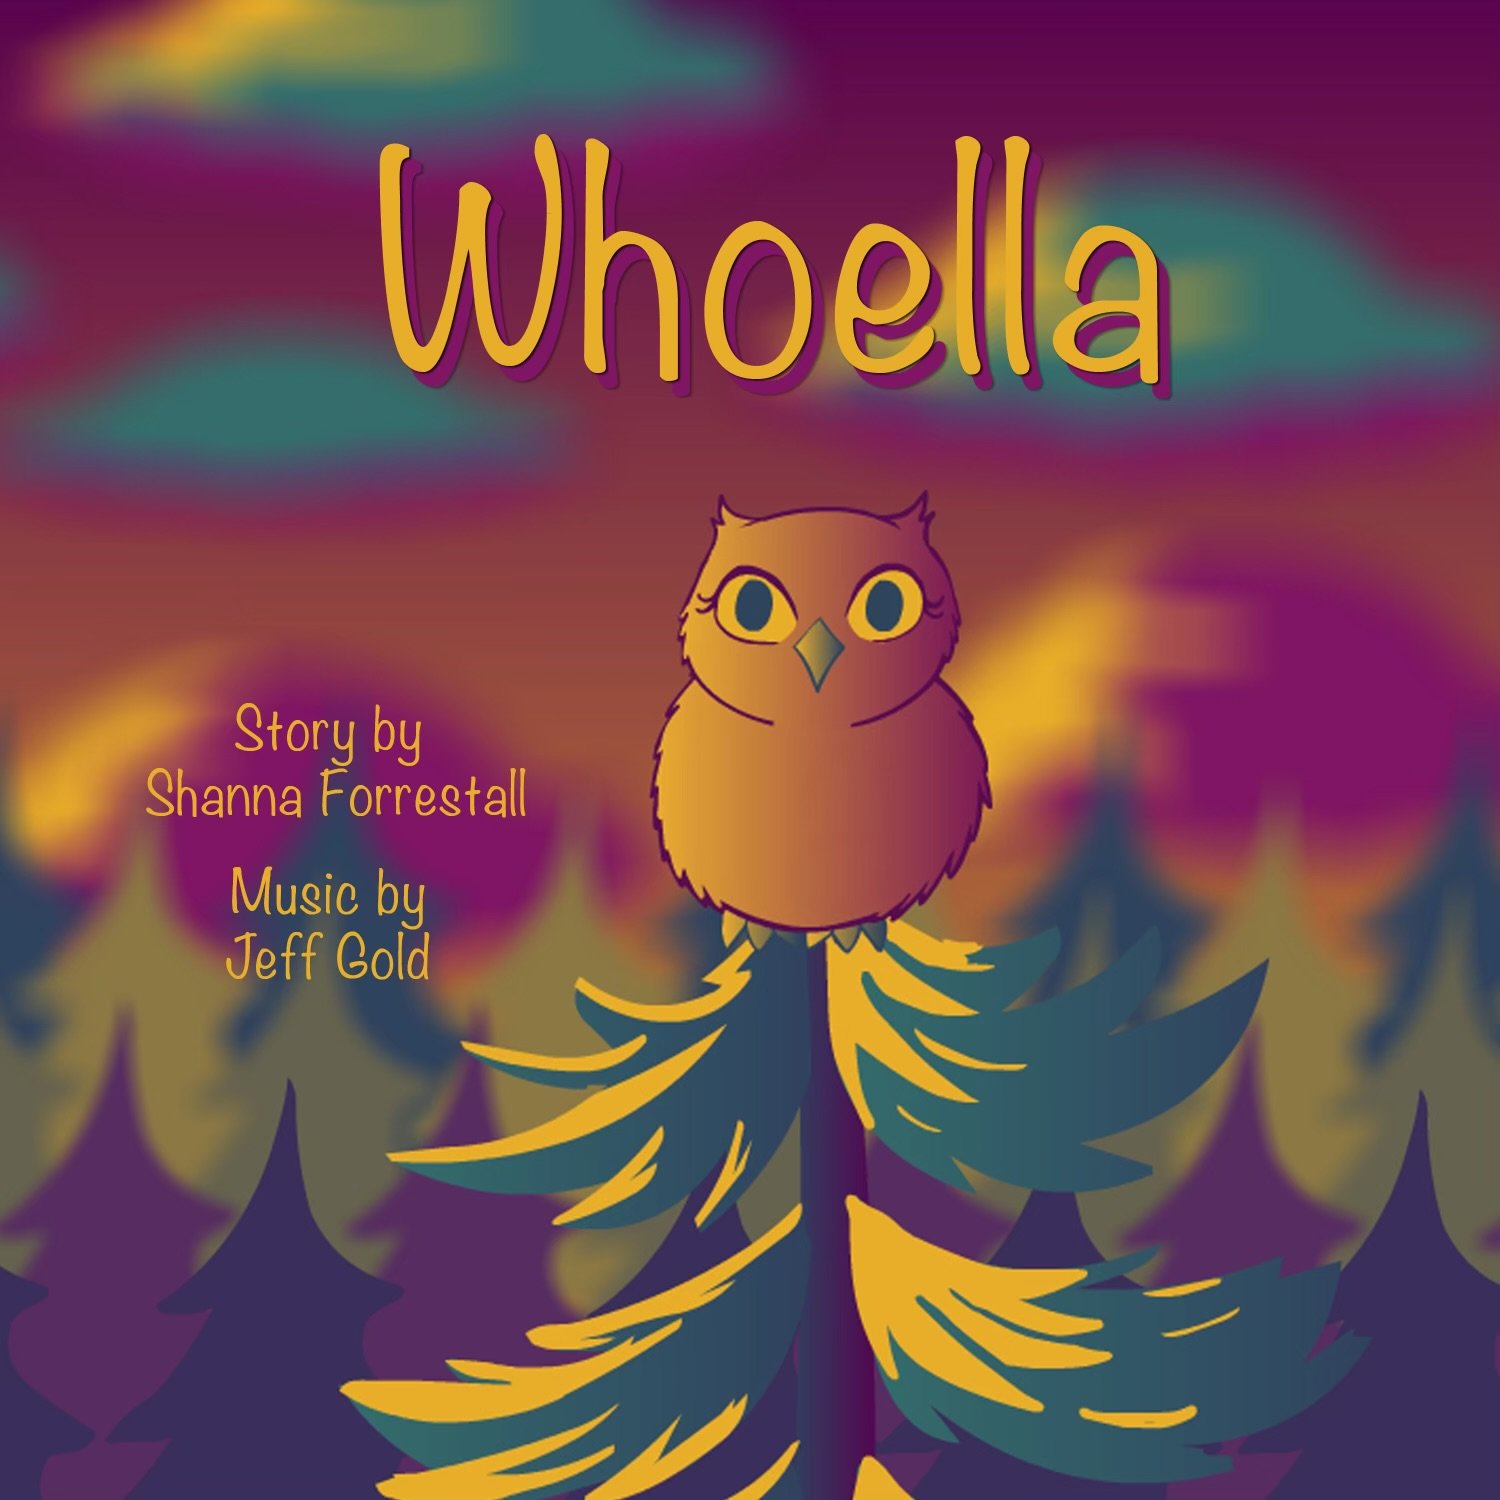 WhoElla Album Cover V1 3k.jpg